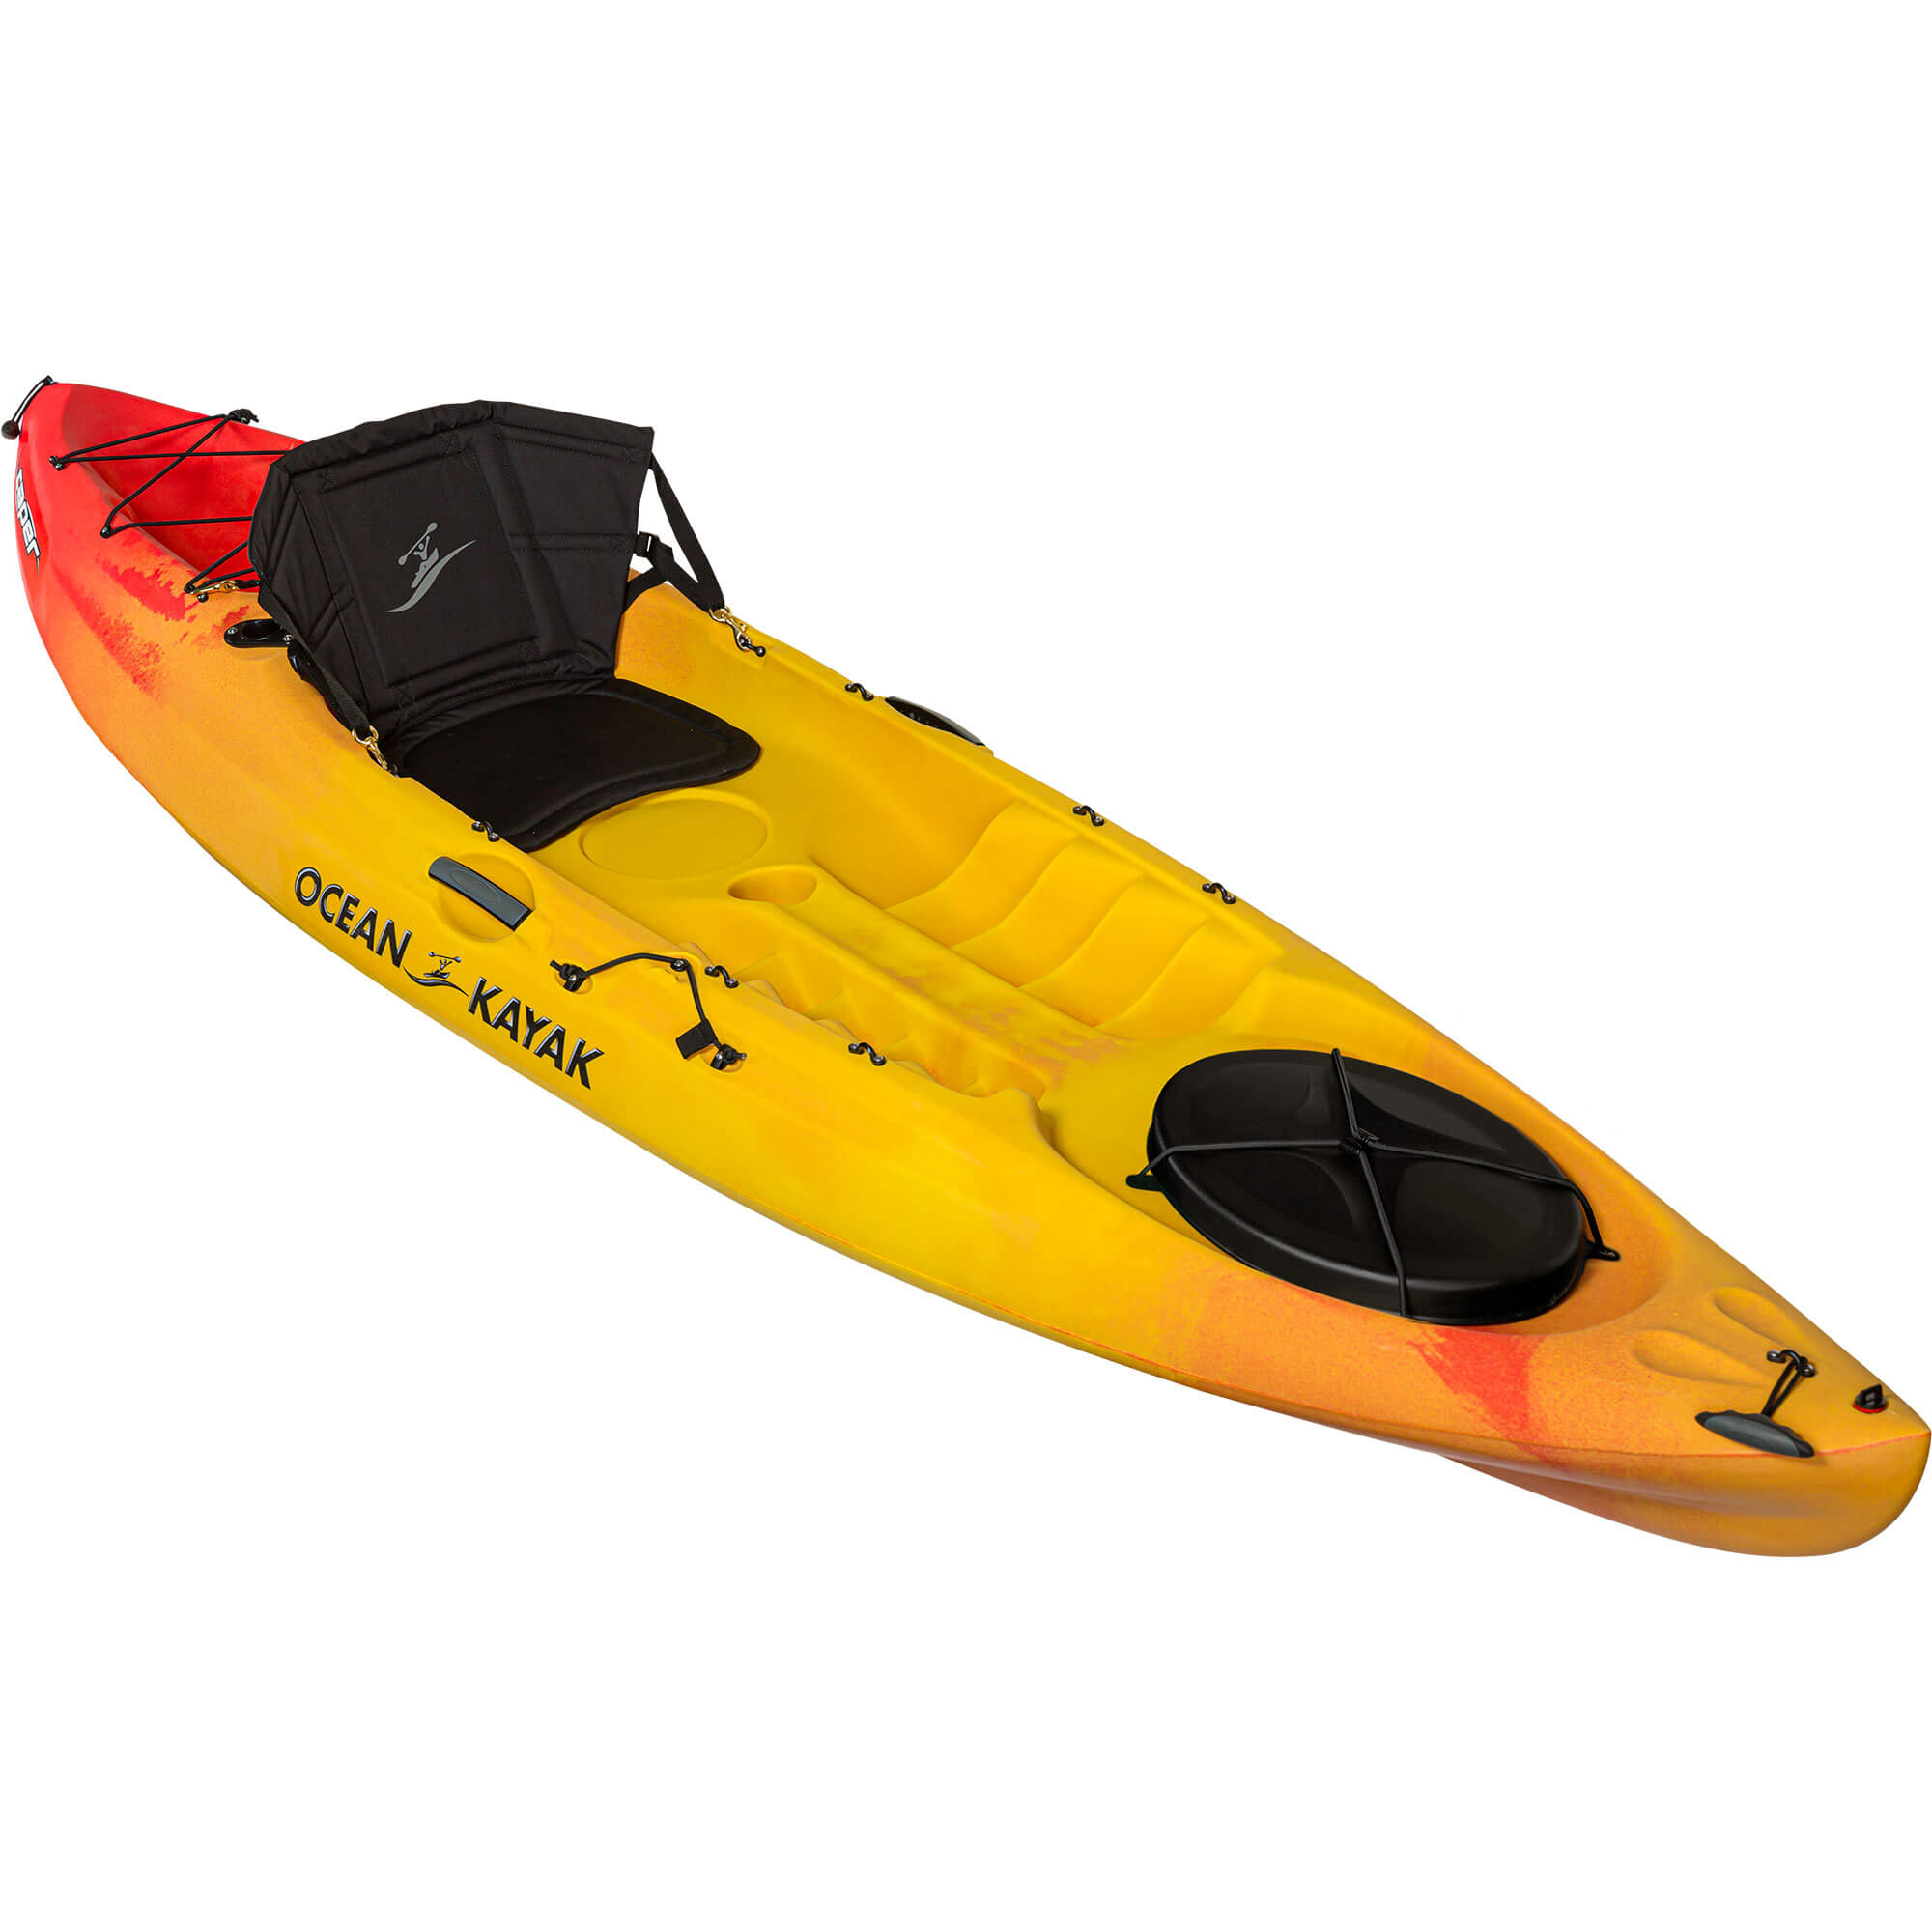 OCEAN KAYAK – Kayaks and More